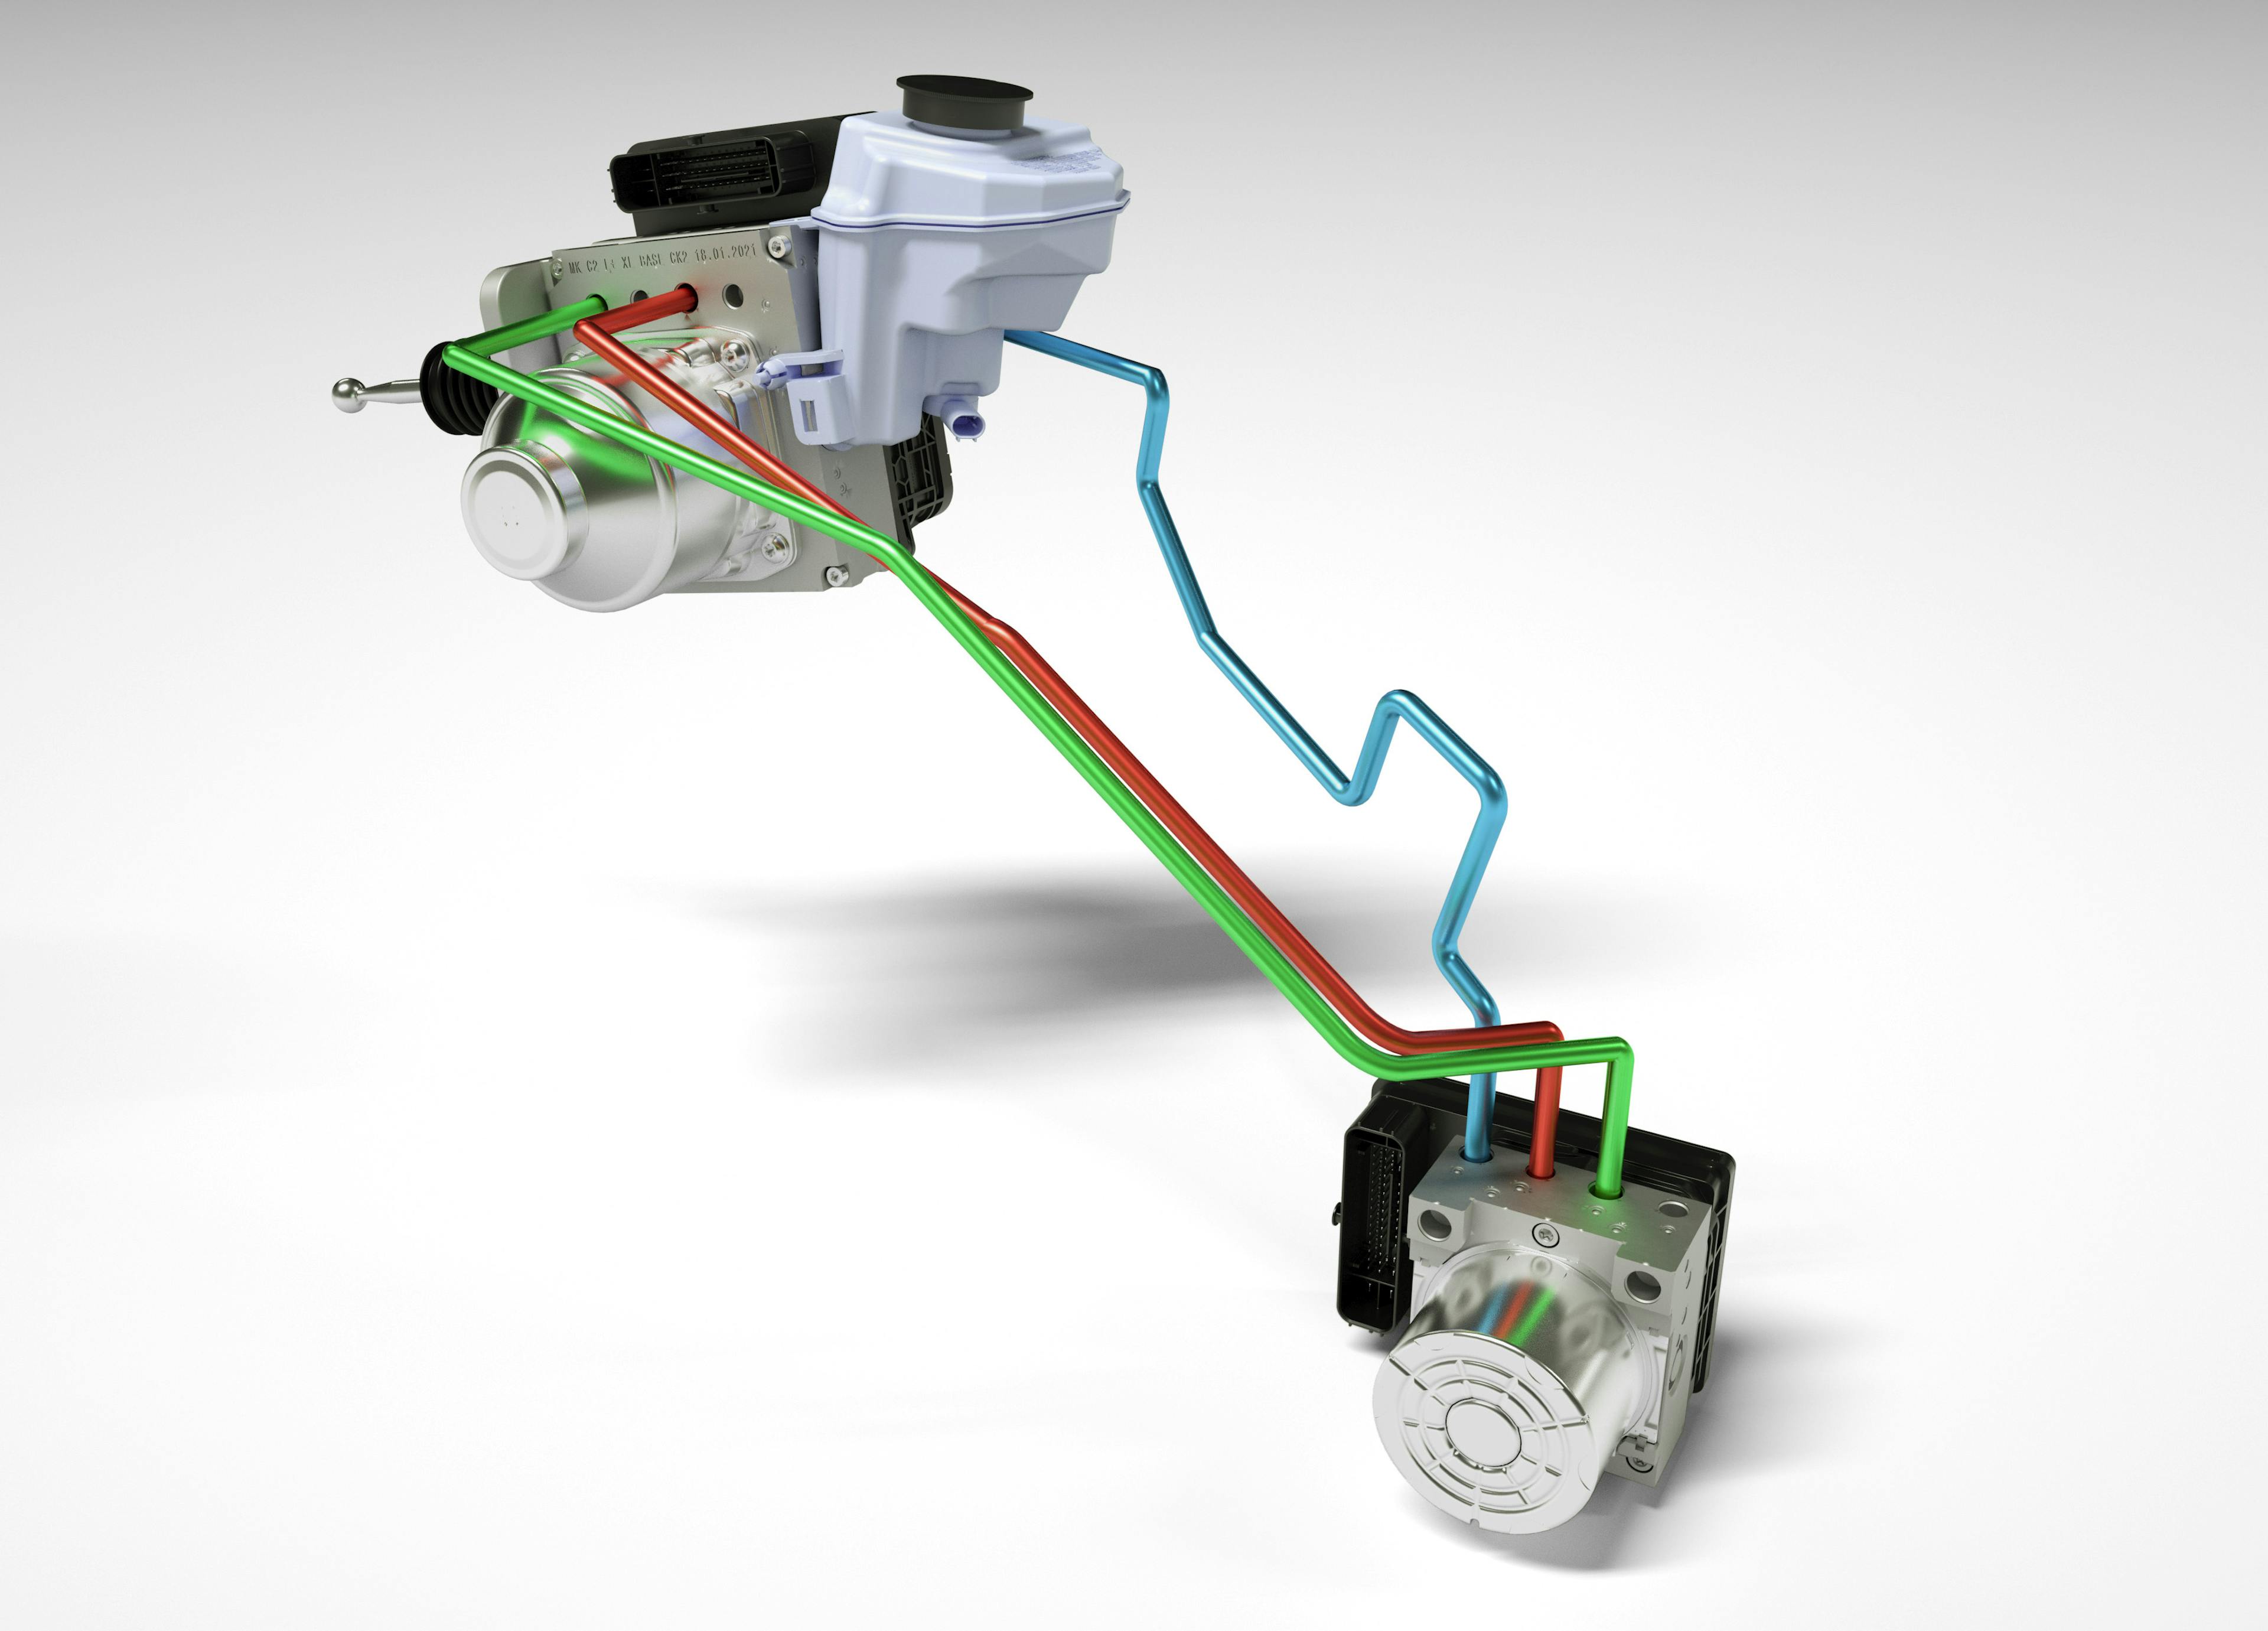 (BU) Continental hat eine elektrisch betätigte Bremse entwickelt, die eine hydraulische Rückfallebene besitzt. Der weiße Behälter an der Bremssteuereinheit enthält die Bremsflüssigkeit